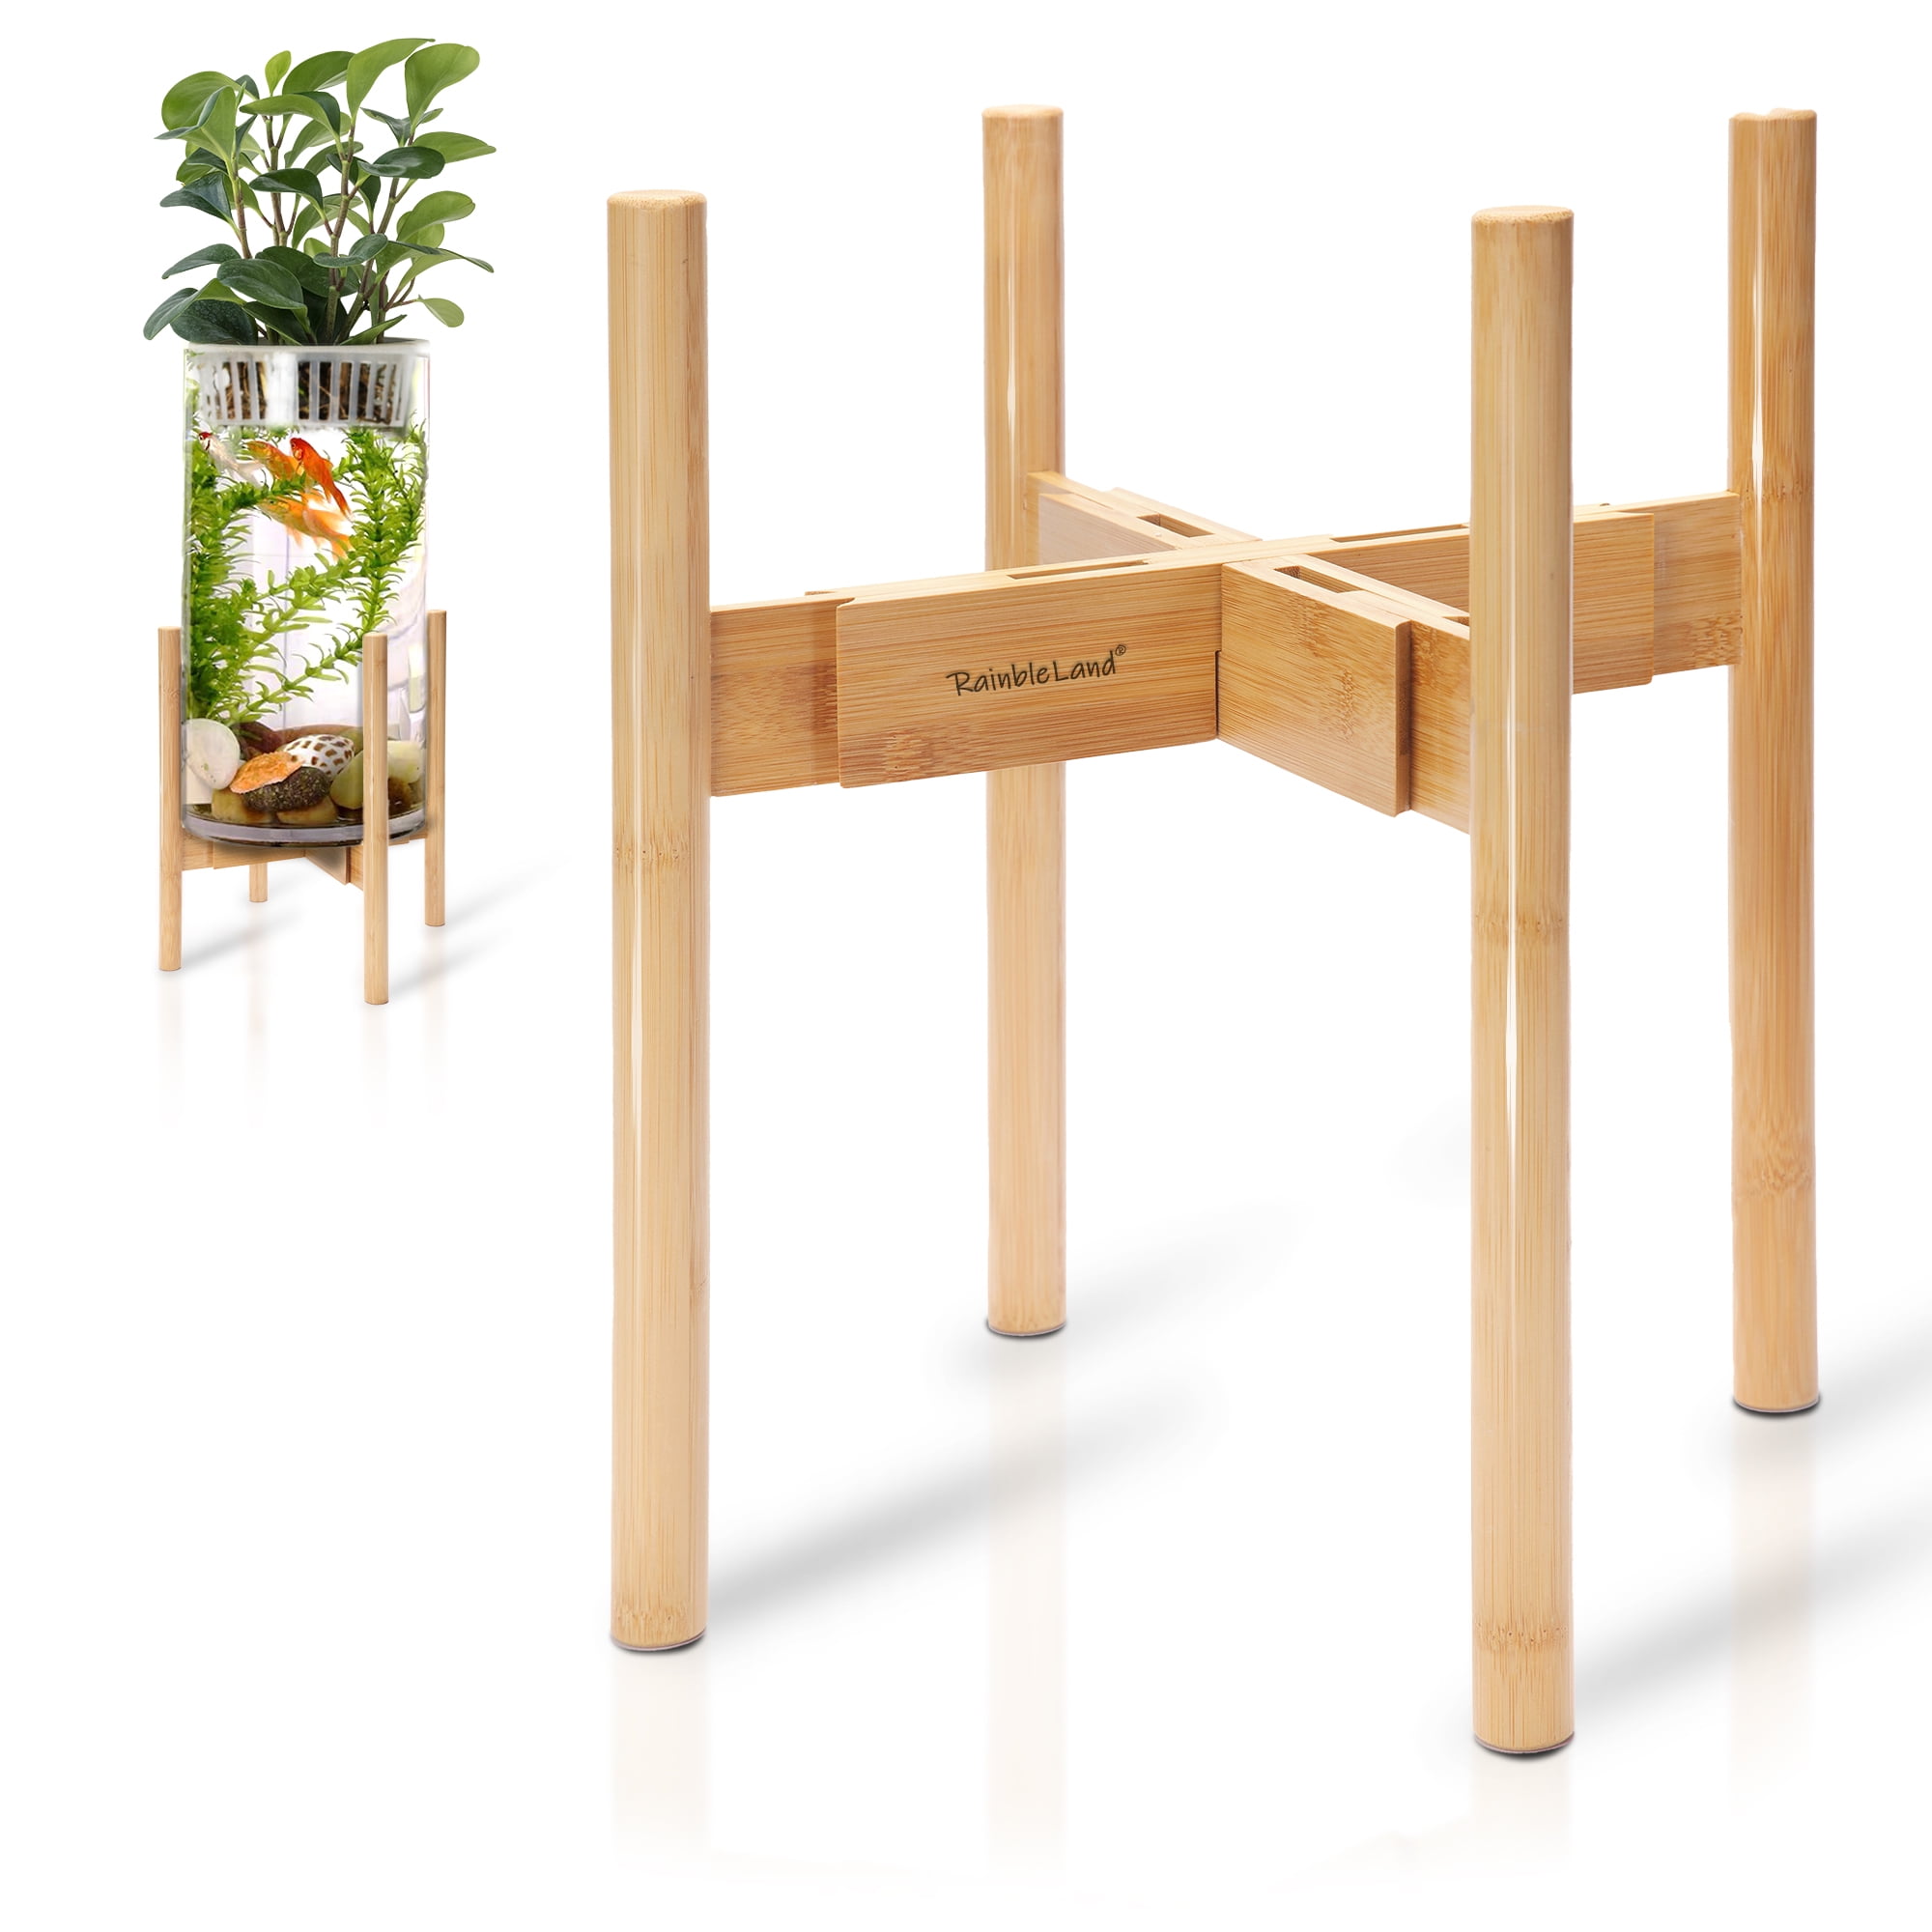 New 30-Design Tall XXL-Large Garden Wooden Plant Stand Planter Flower Pot Shelf 